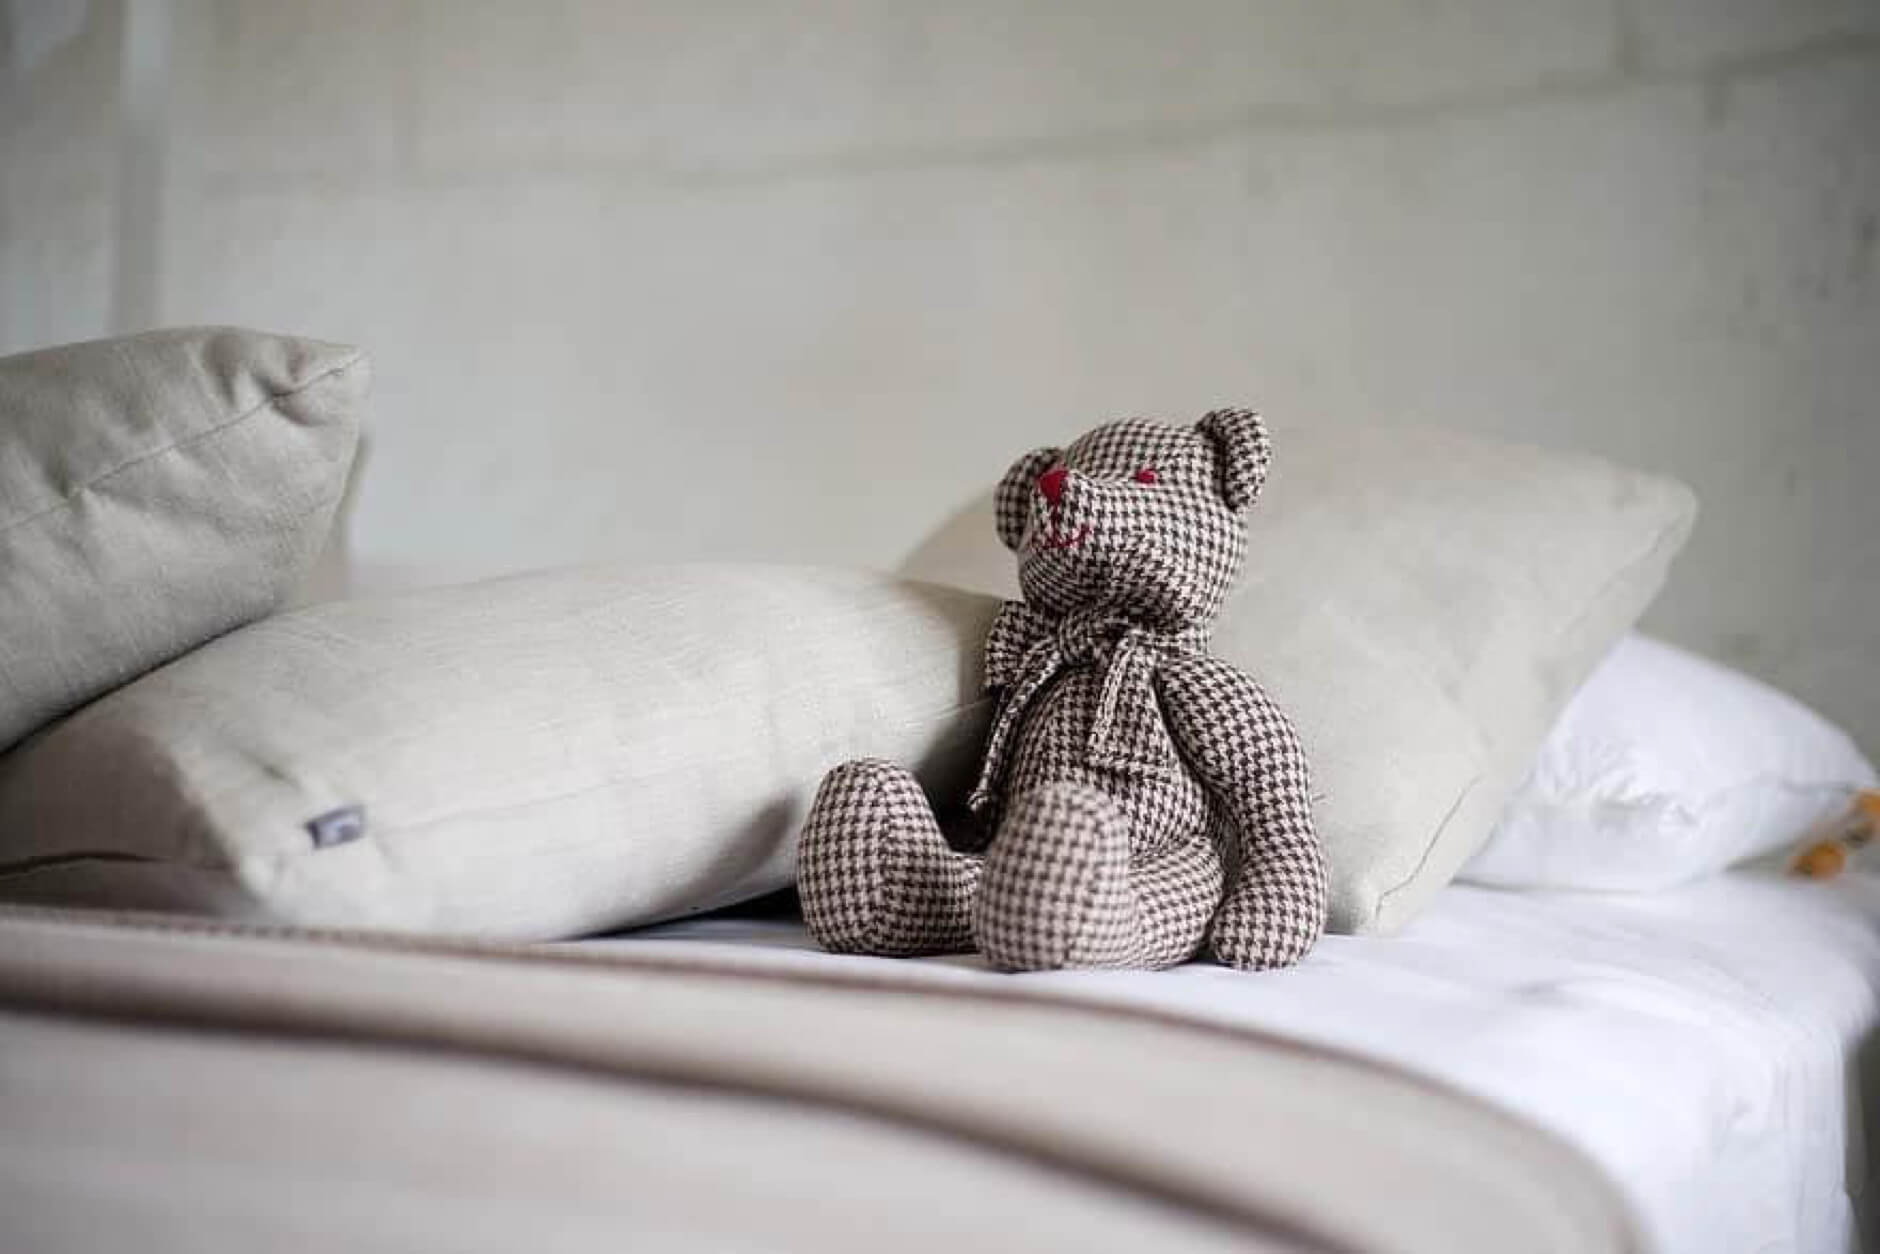 Trang trí phòng ngủ nhỏ bằng gấu bông